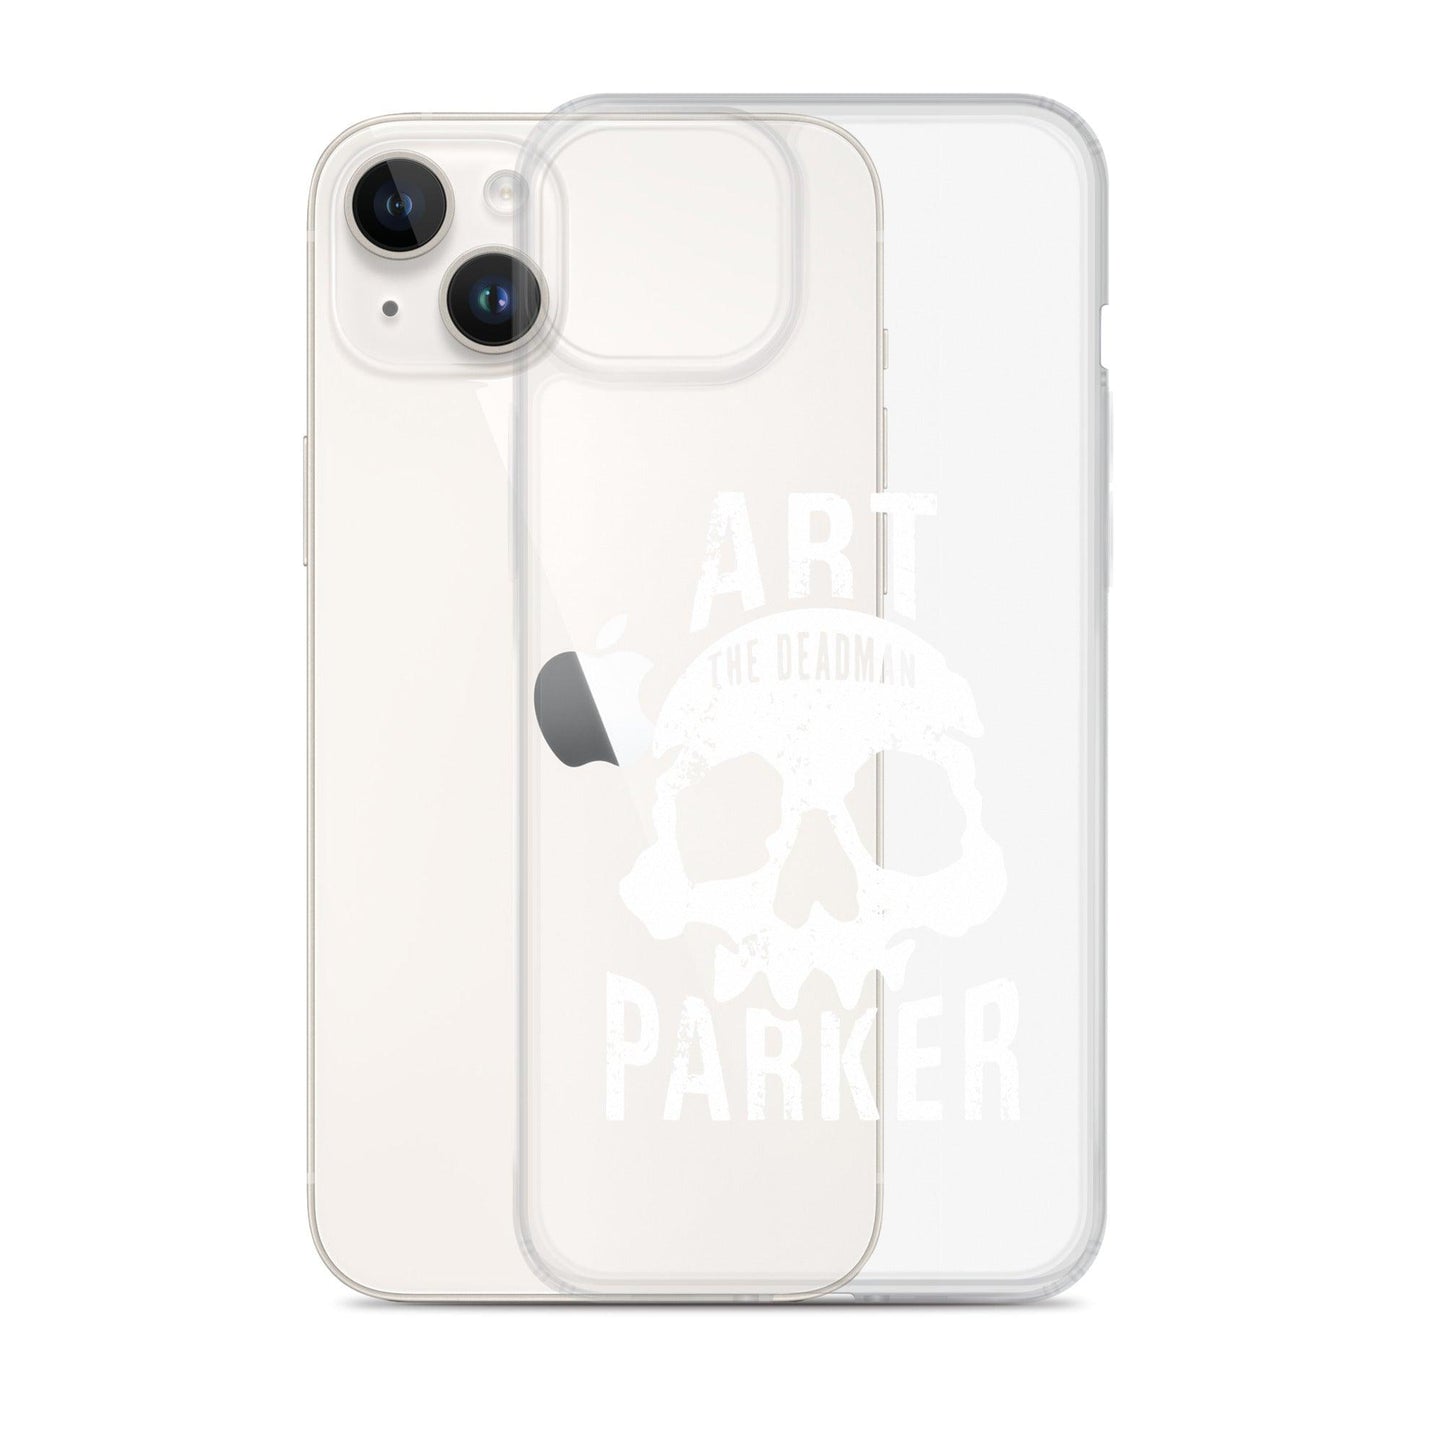 Art Parker "Deadman" iPhone® - Fan Arch